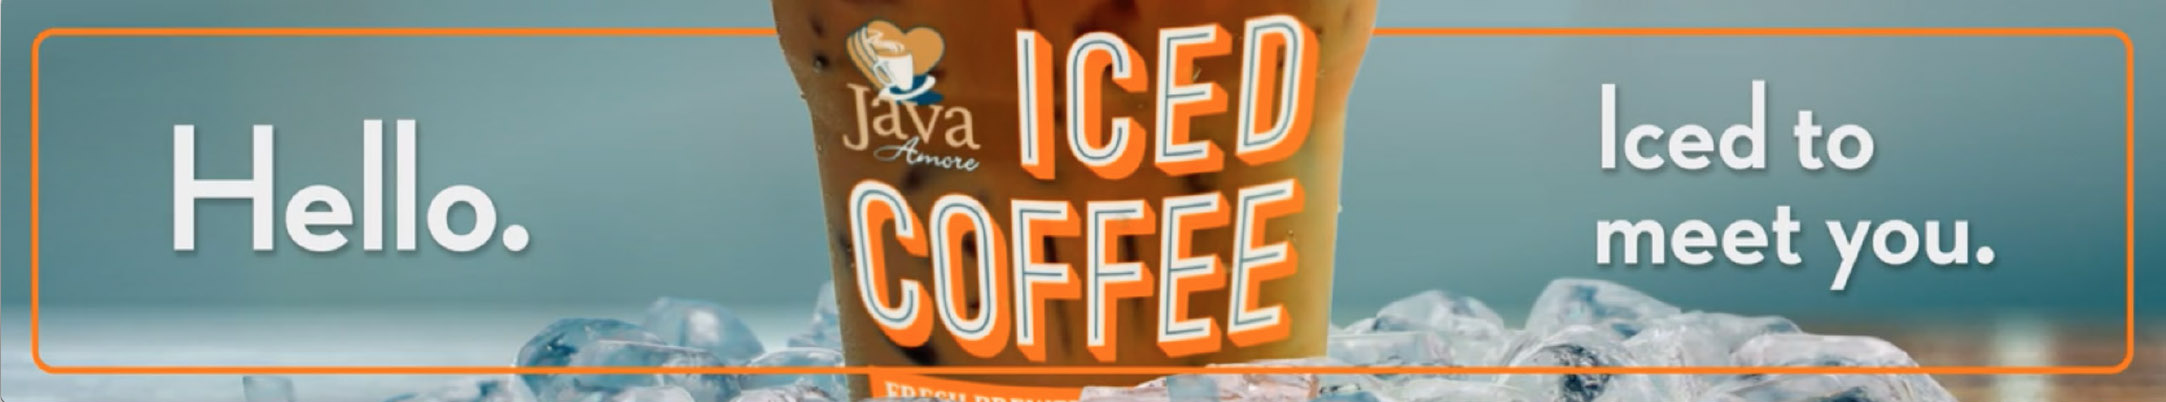 Love’s Iced Coffee